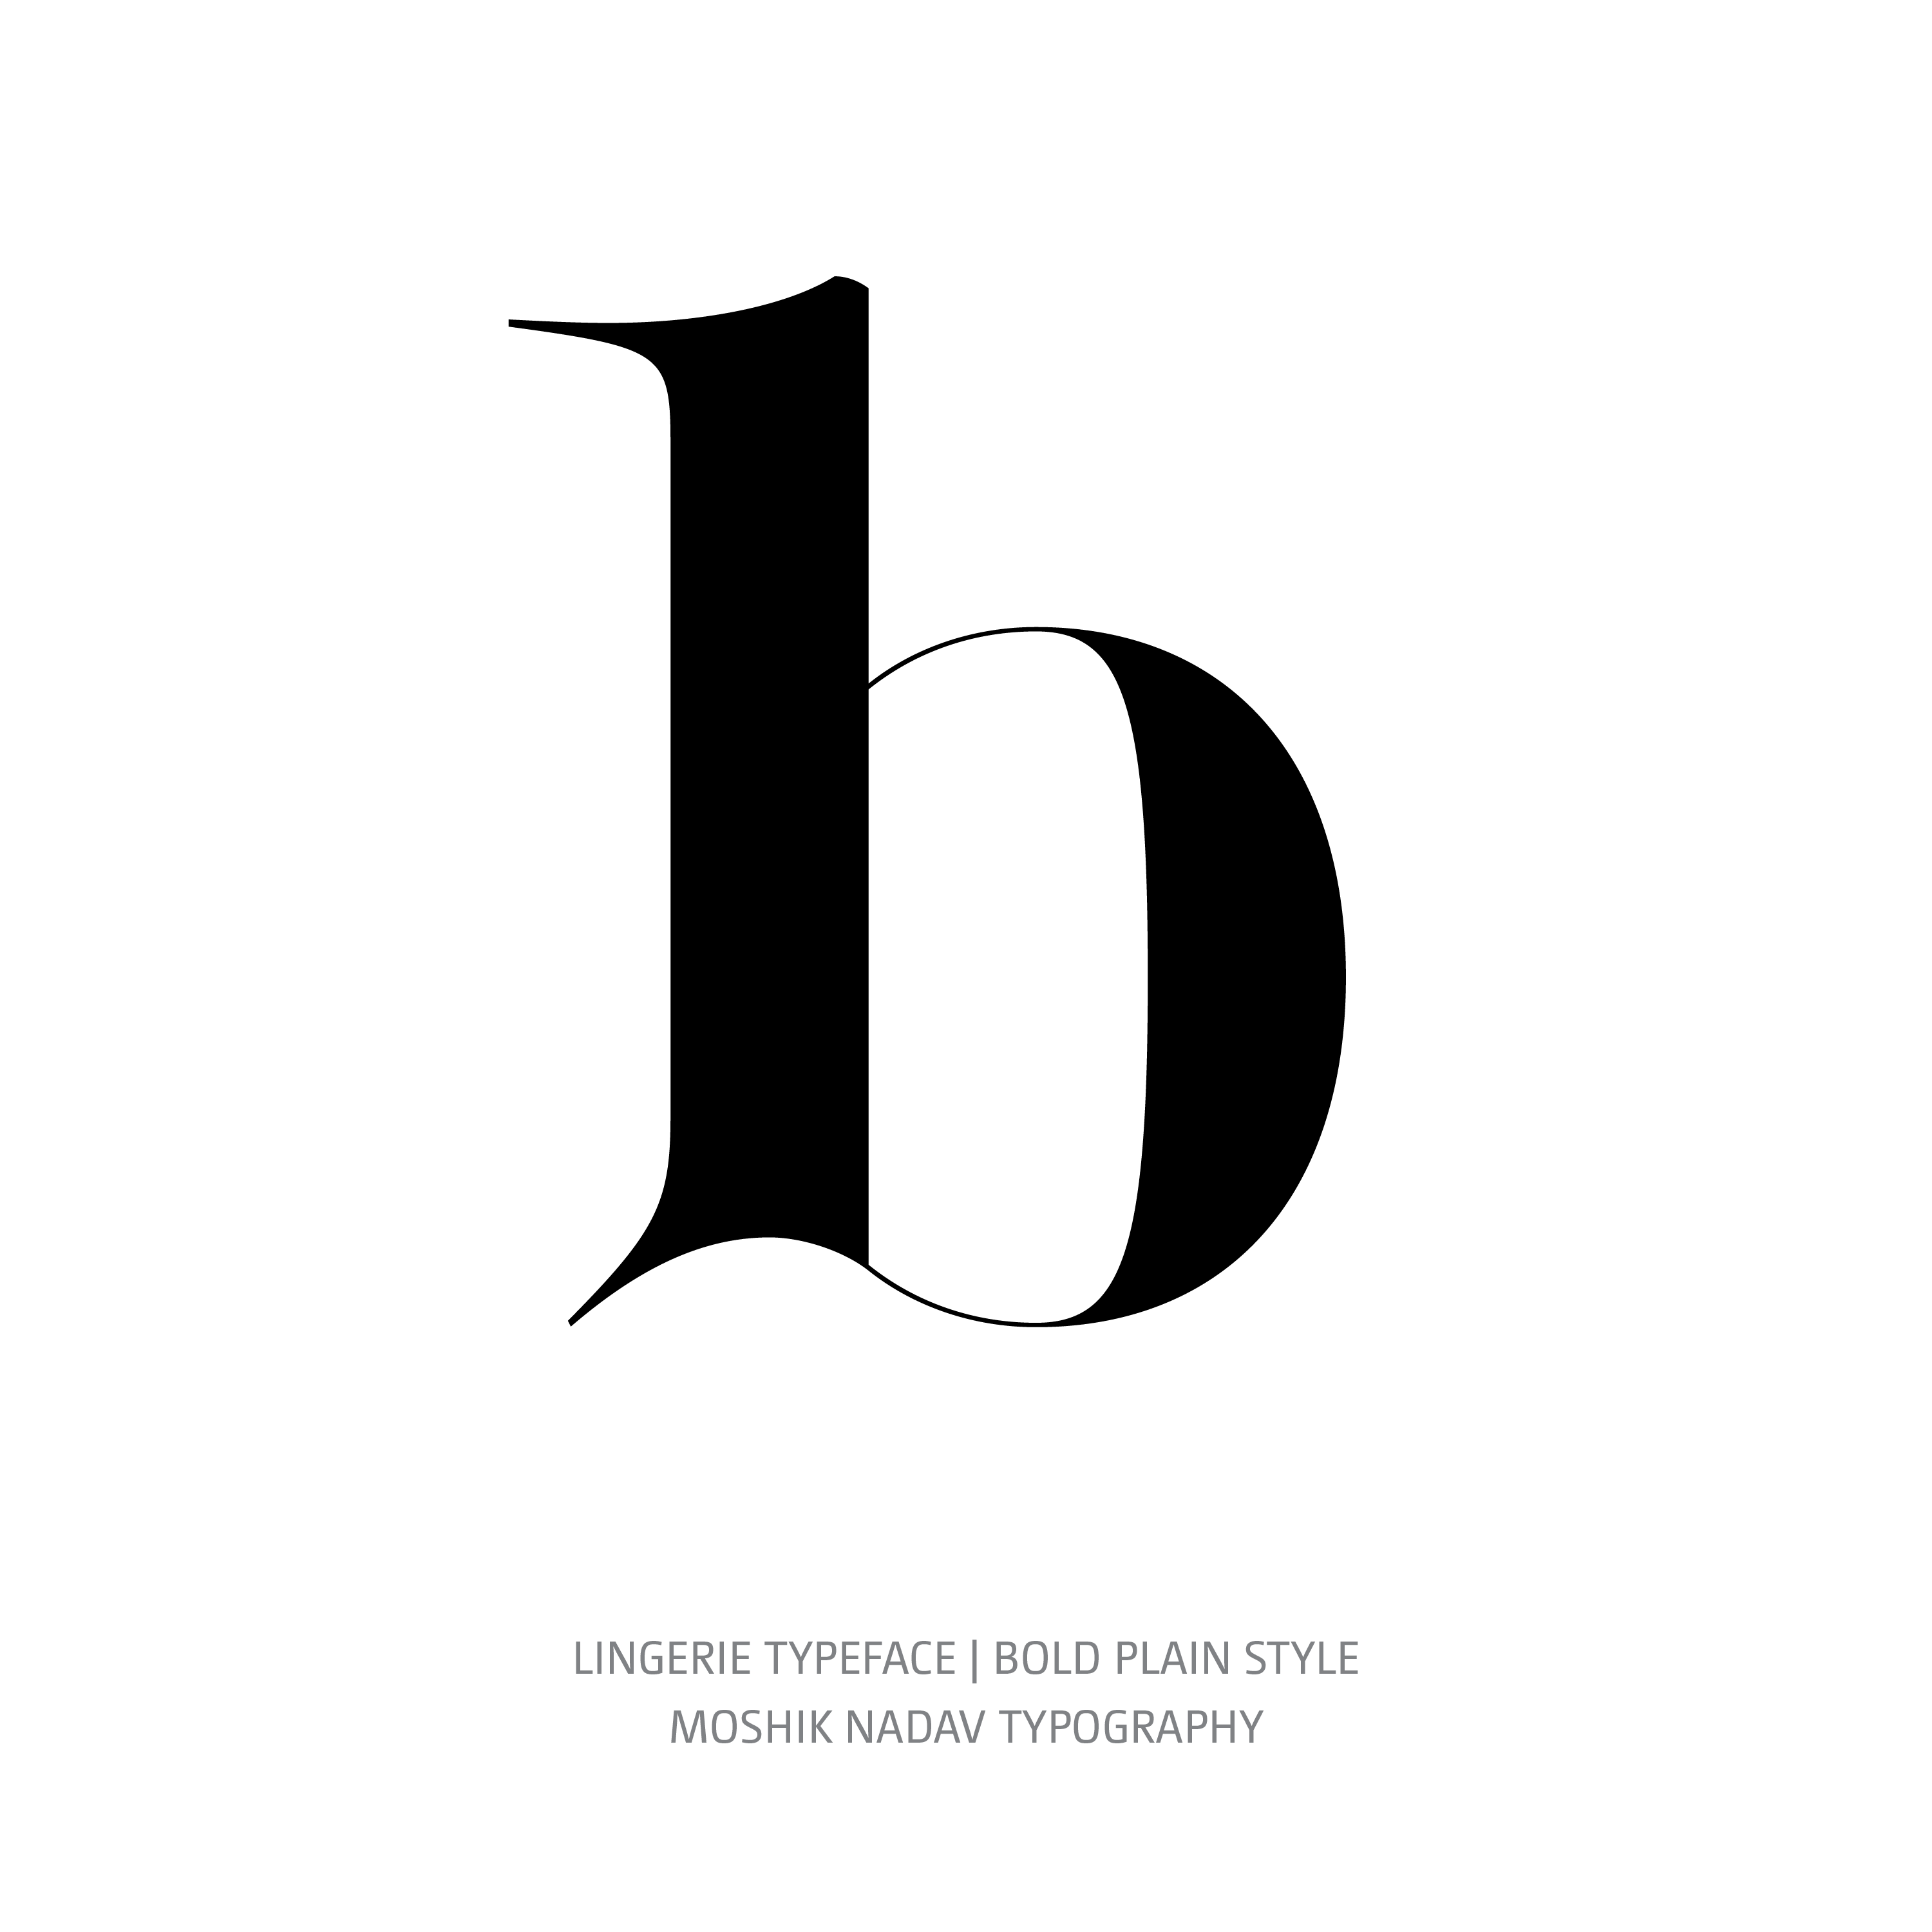 Lingerie Typeface Bold Plain b